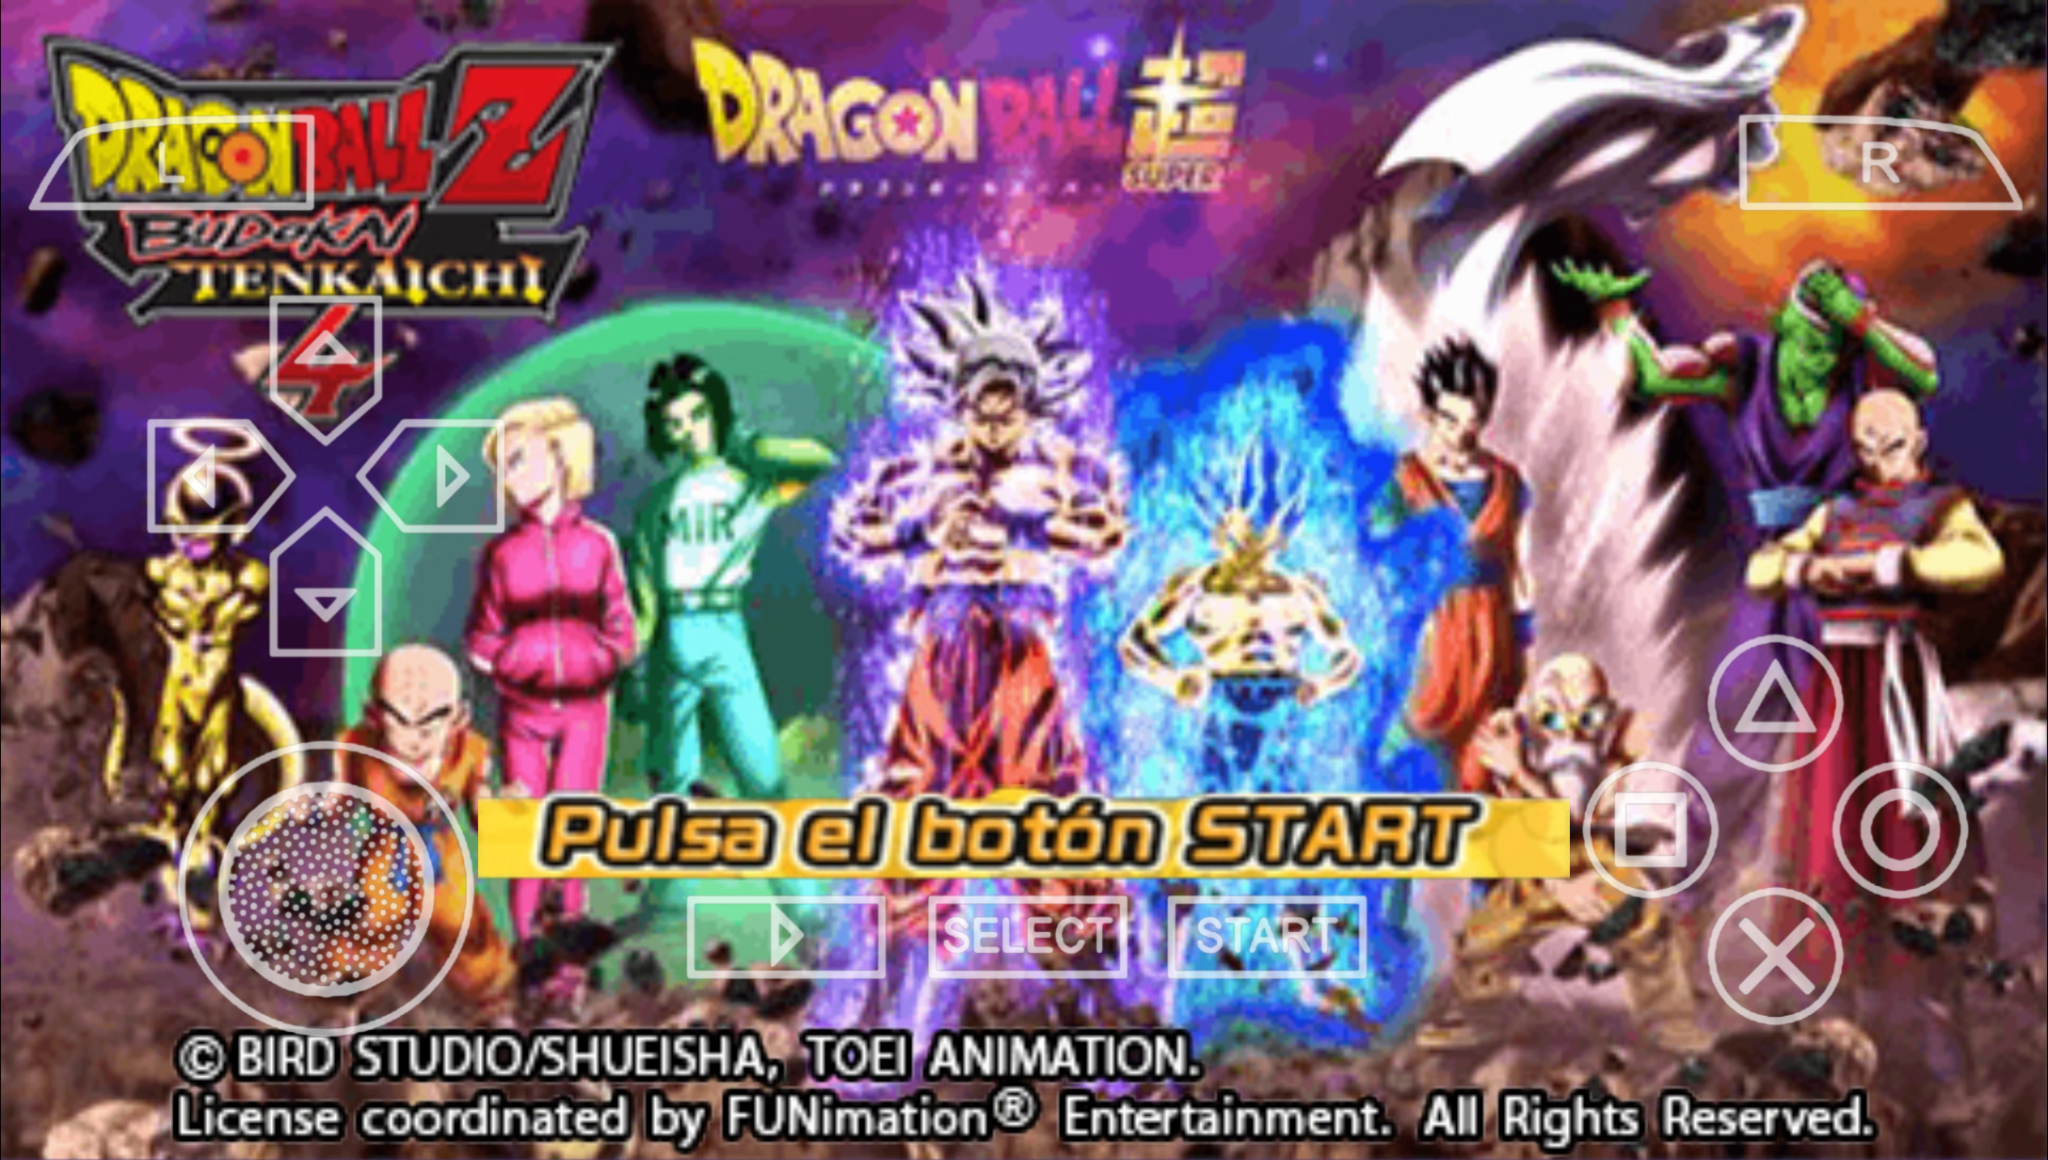 Dragon Ball Z Budokai Tenkaichi 4 Epic Android PSP Game